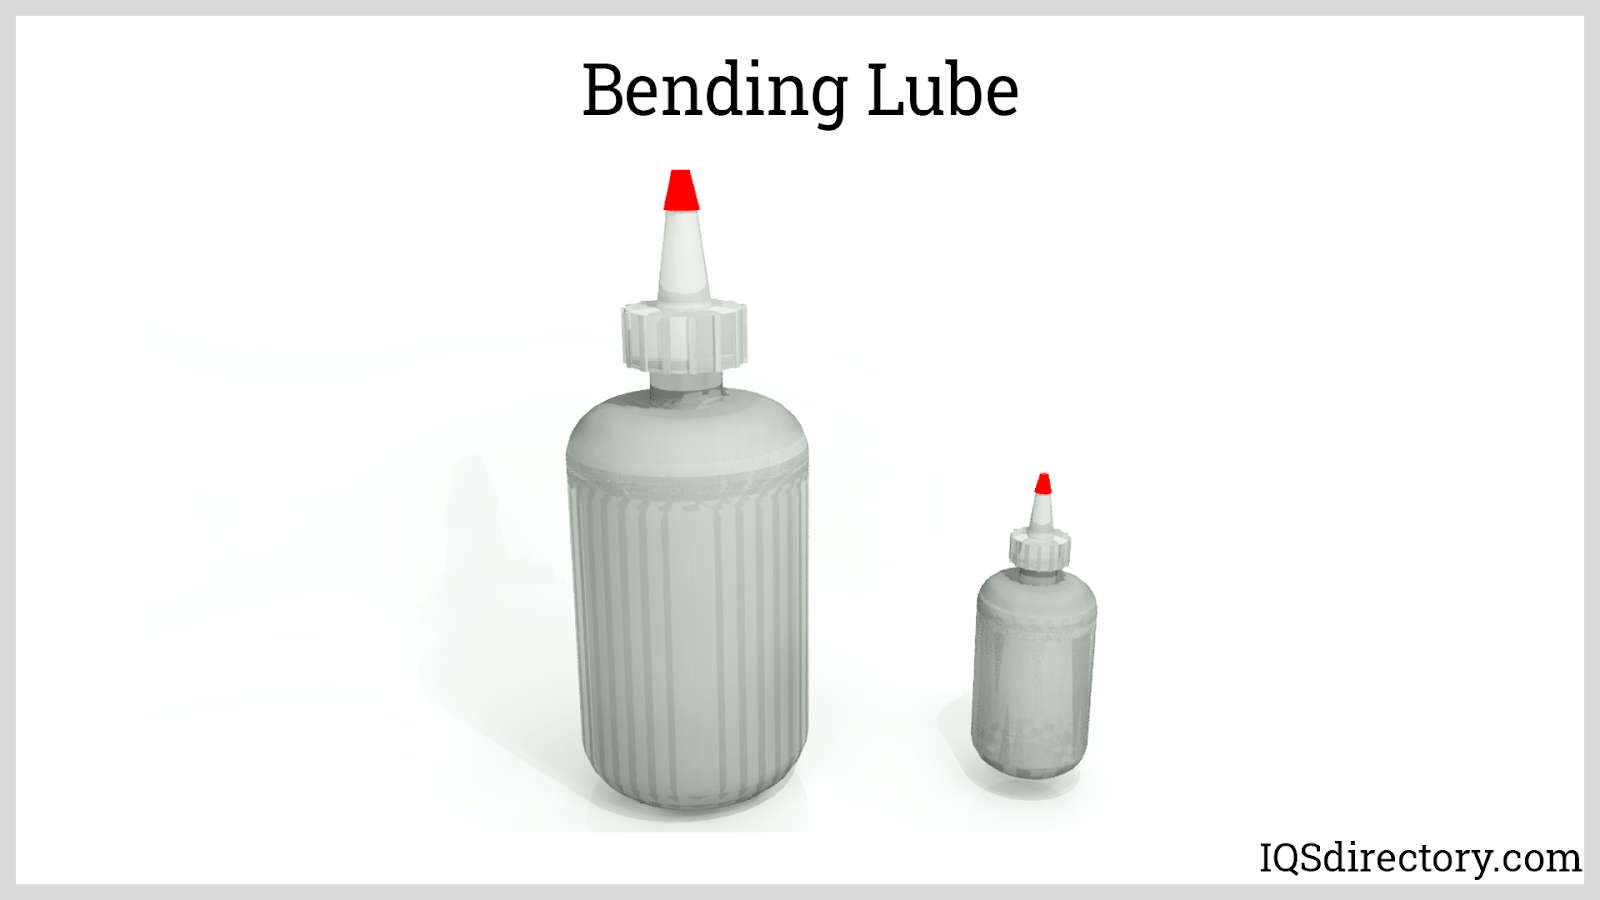 Bending Lube